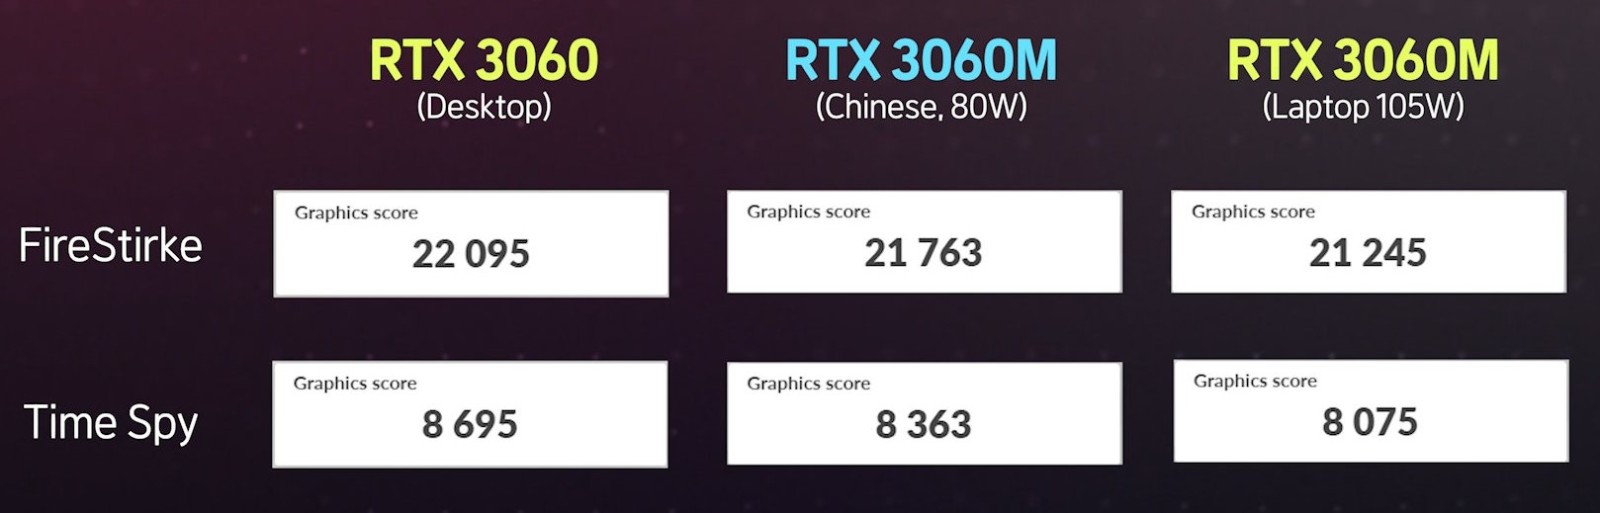 老外体验中国独有的魔改版RTX3060 性能很意外